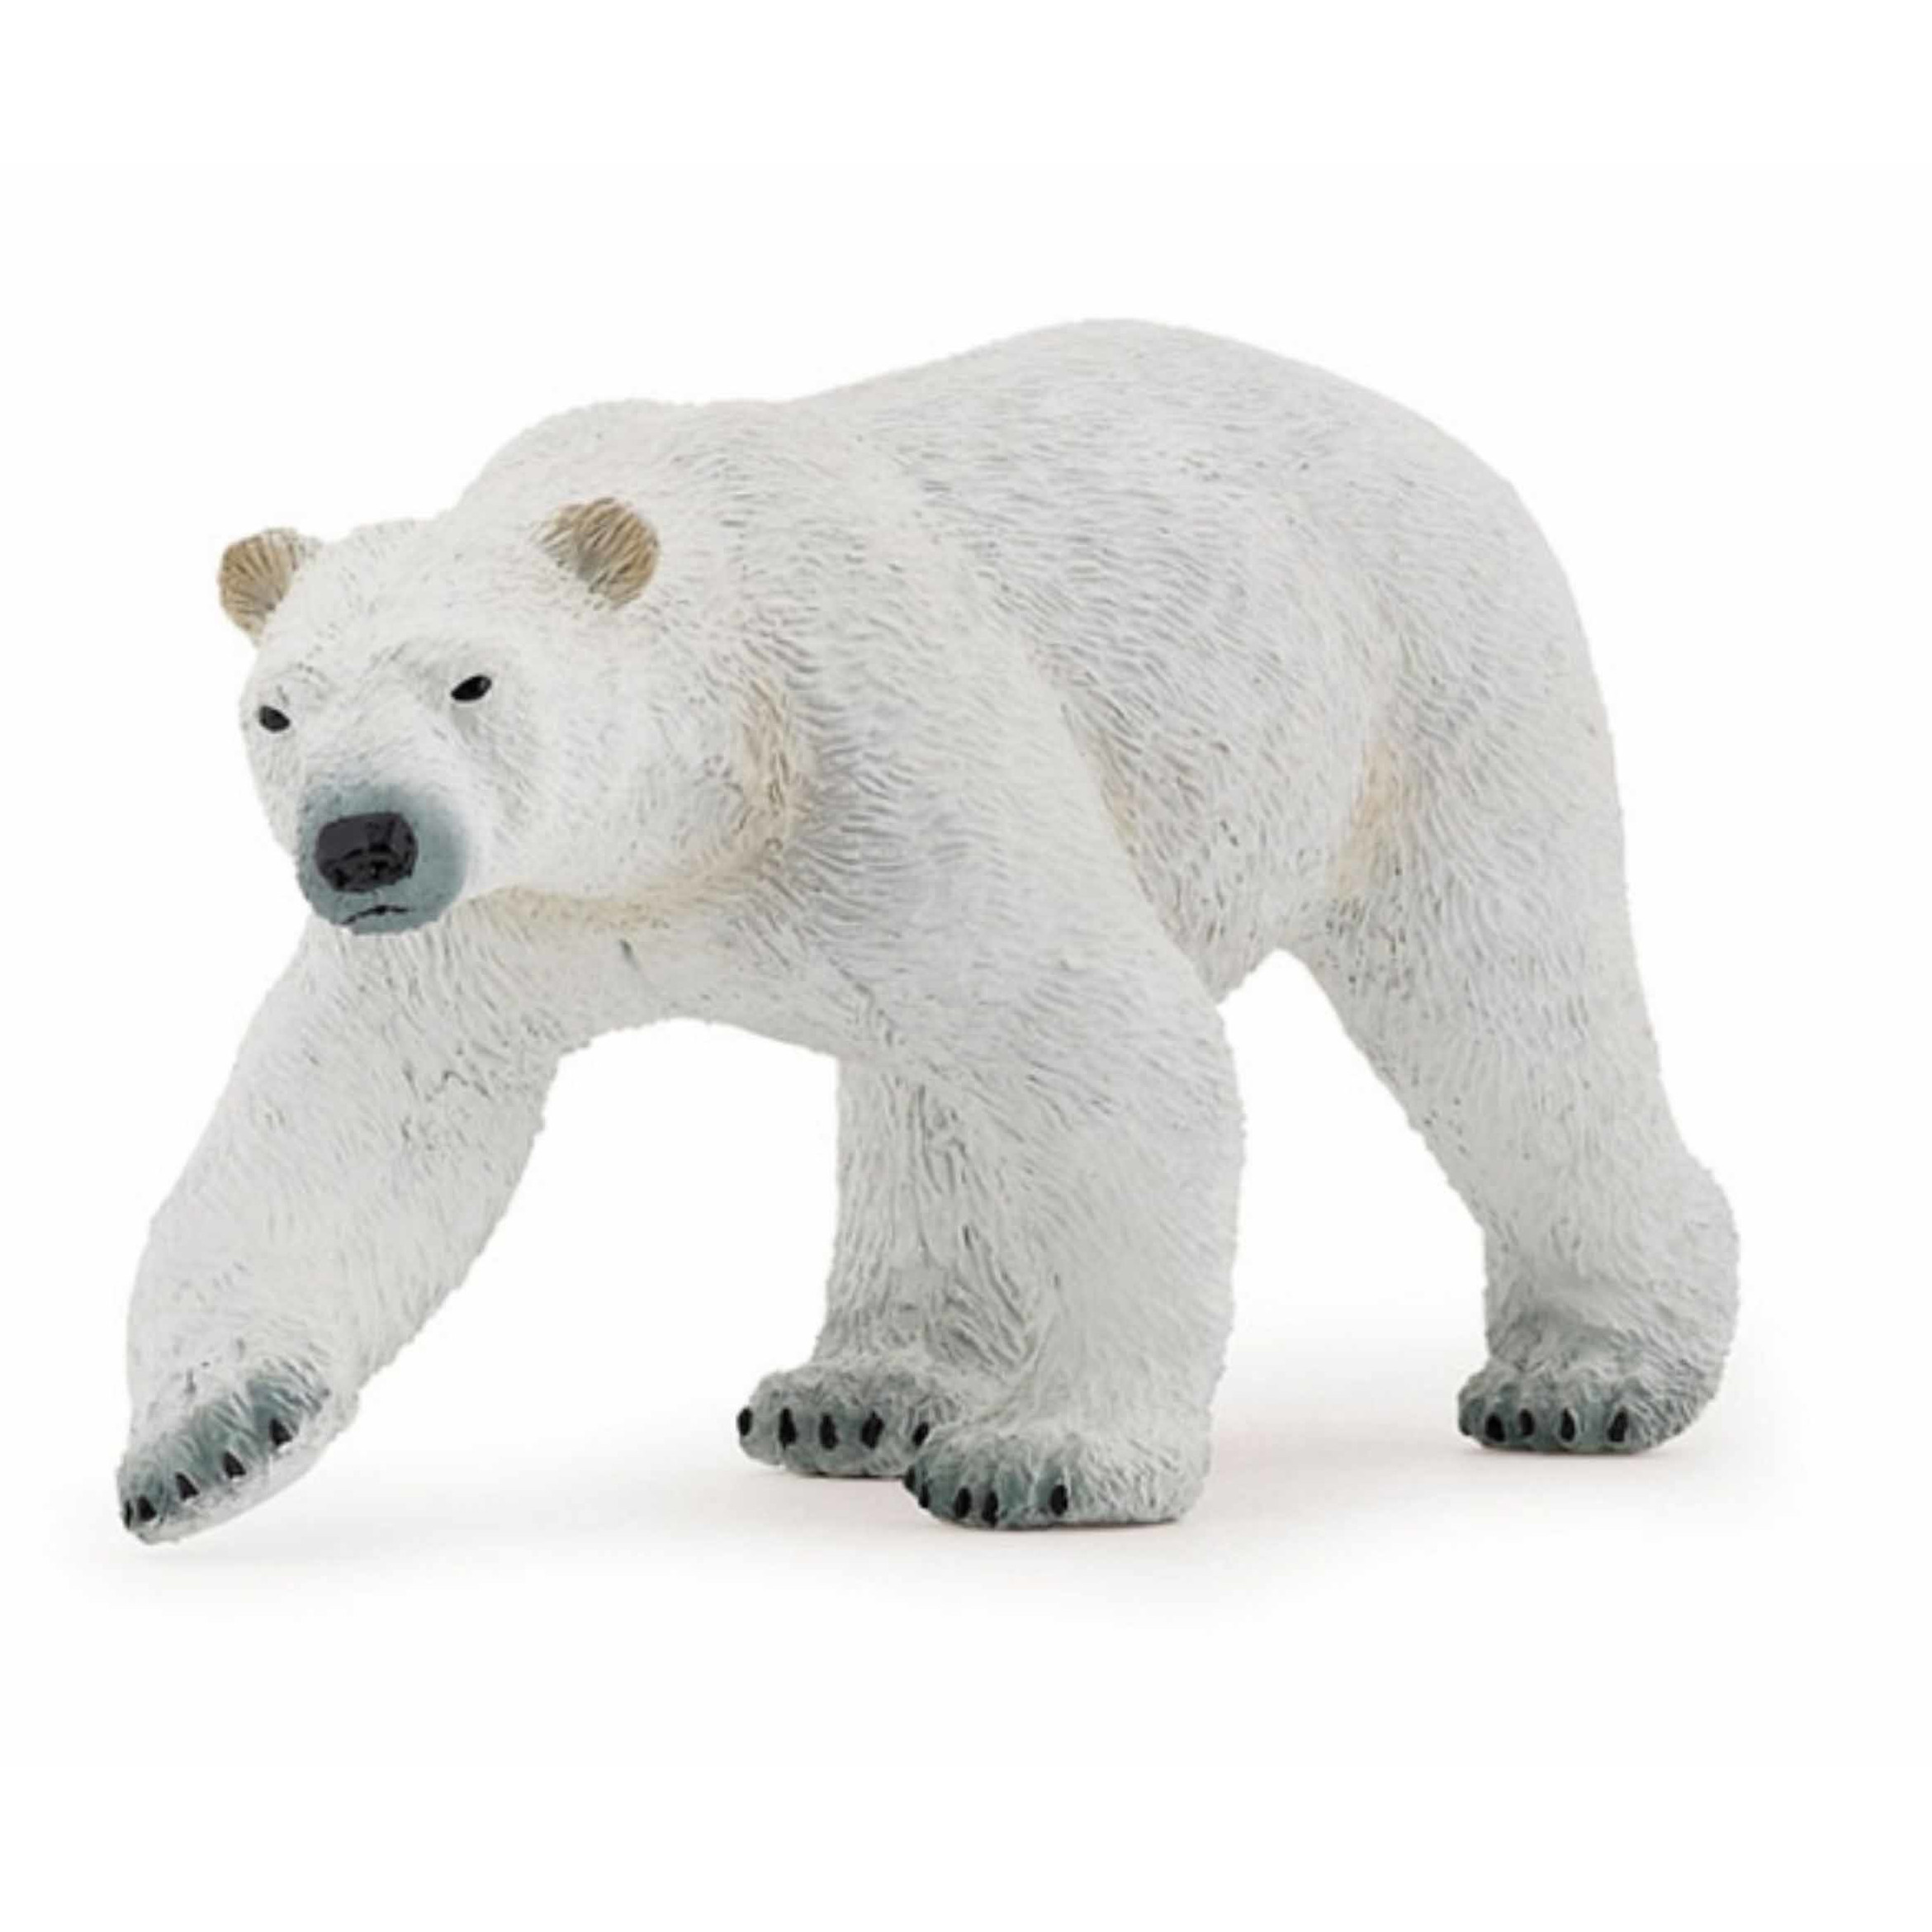 Plastic ijsbeer speeldiertje 14 cm